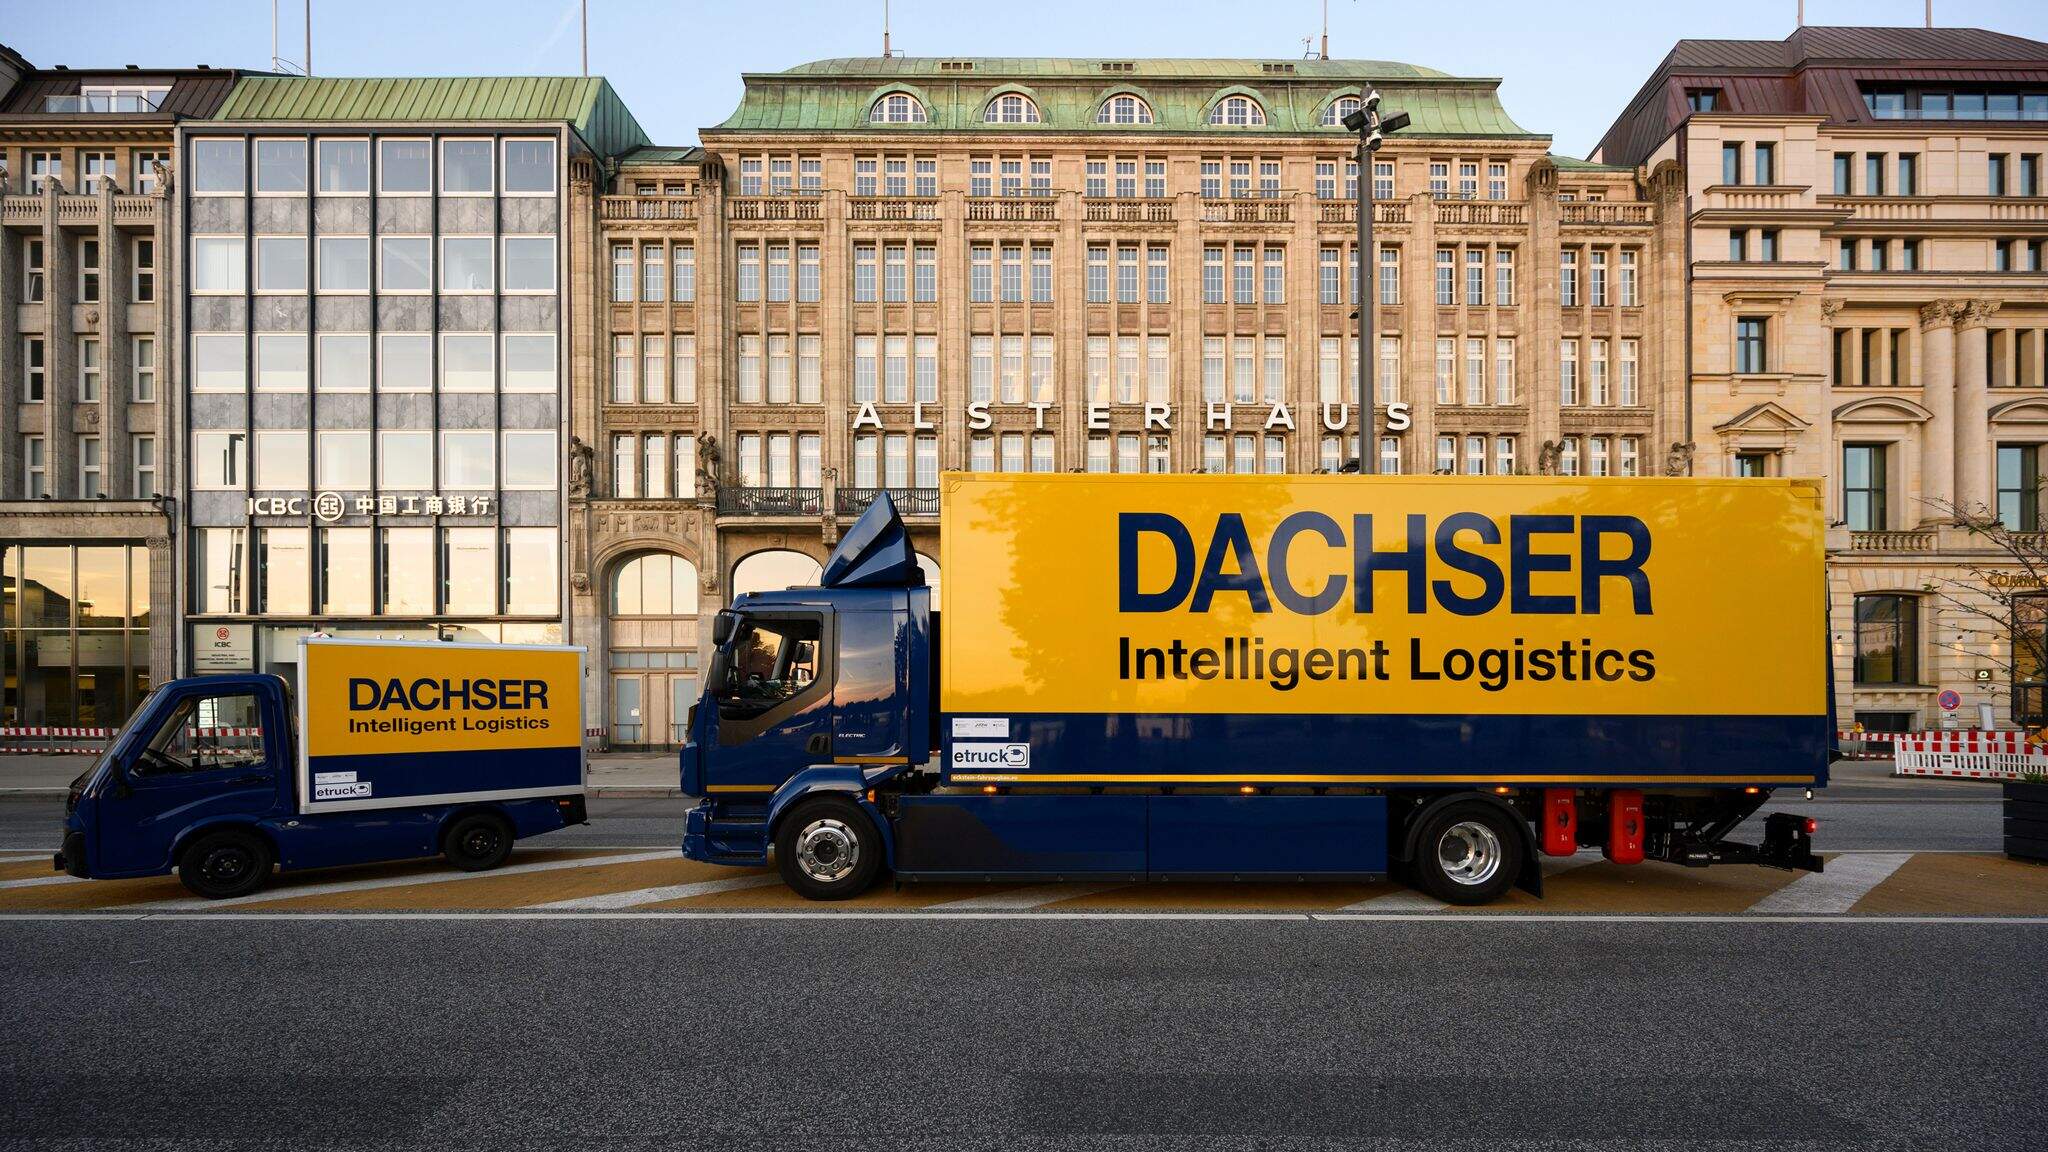 DACHSER Emission-Free Delivery maakt gebruik van elektrische bestelwagens en vrachtwagens en van zware, elektrisch ondersteunde bakfietsen om de ‘laatste mile’ af te leggen in gedefinieerde gebieden in de binnenstad.
 